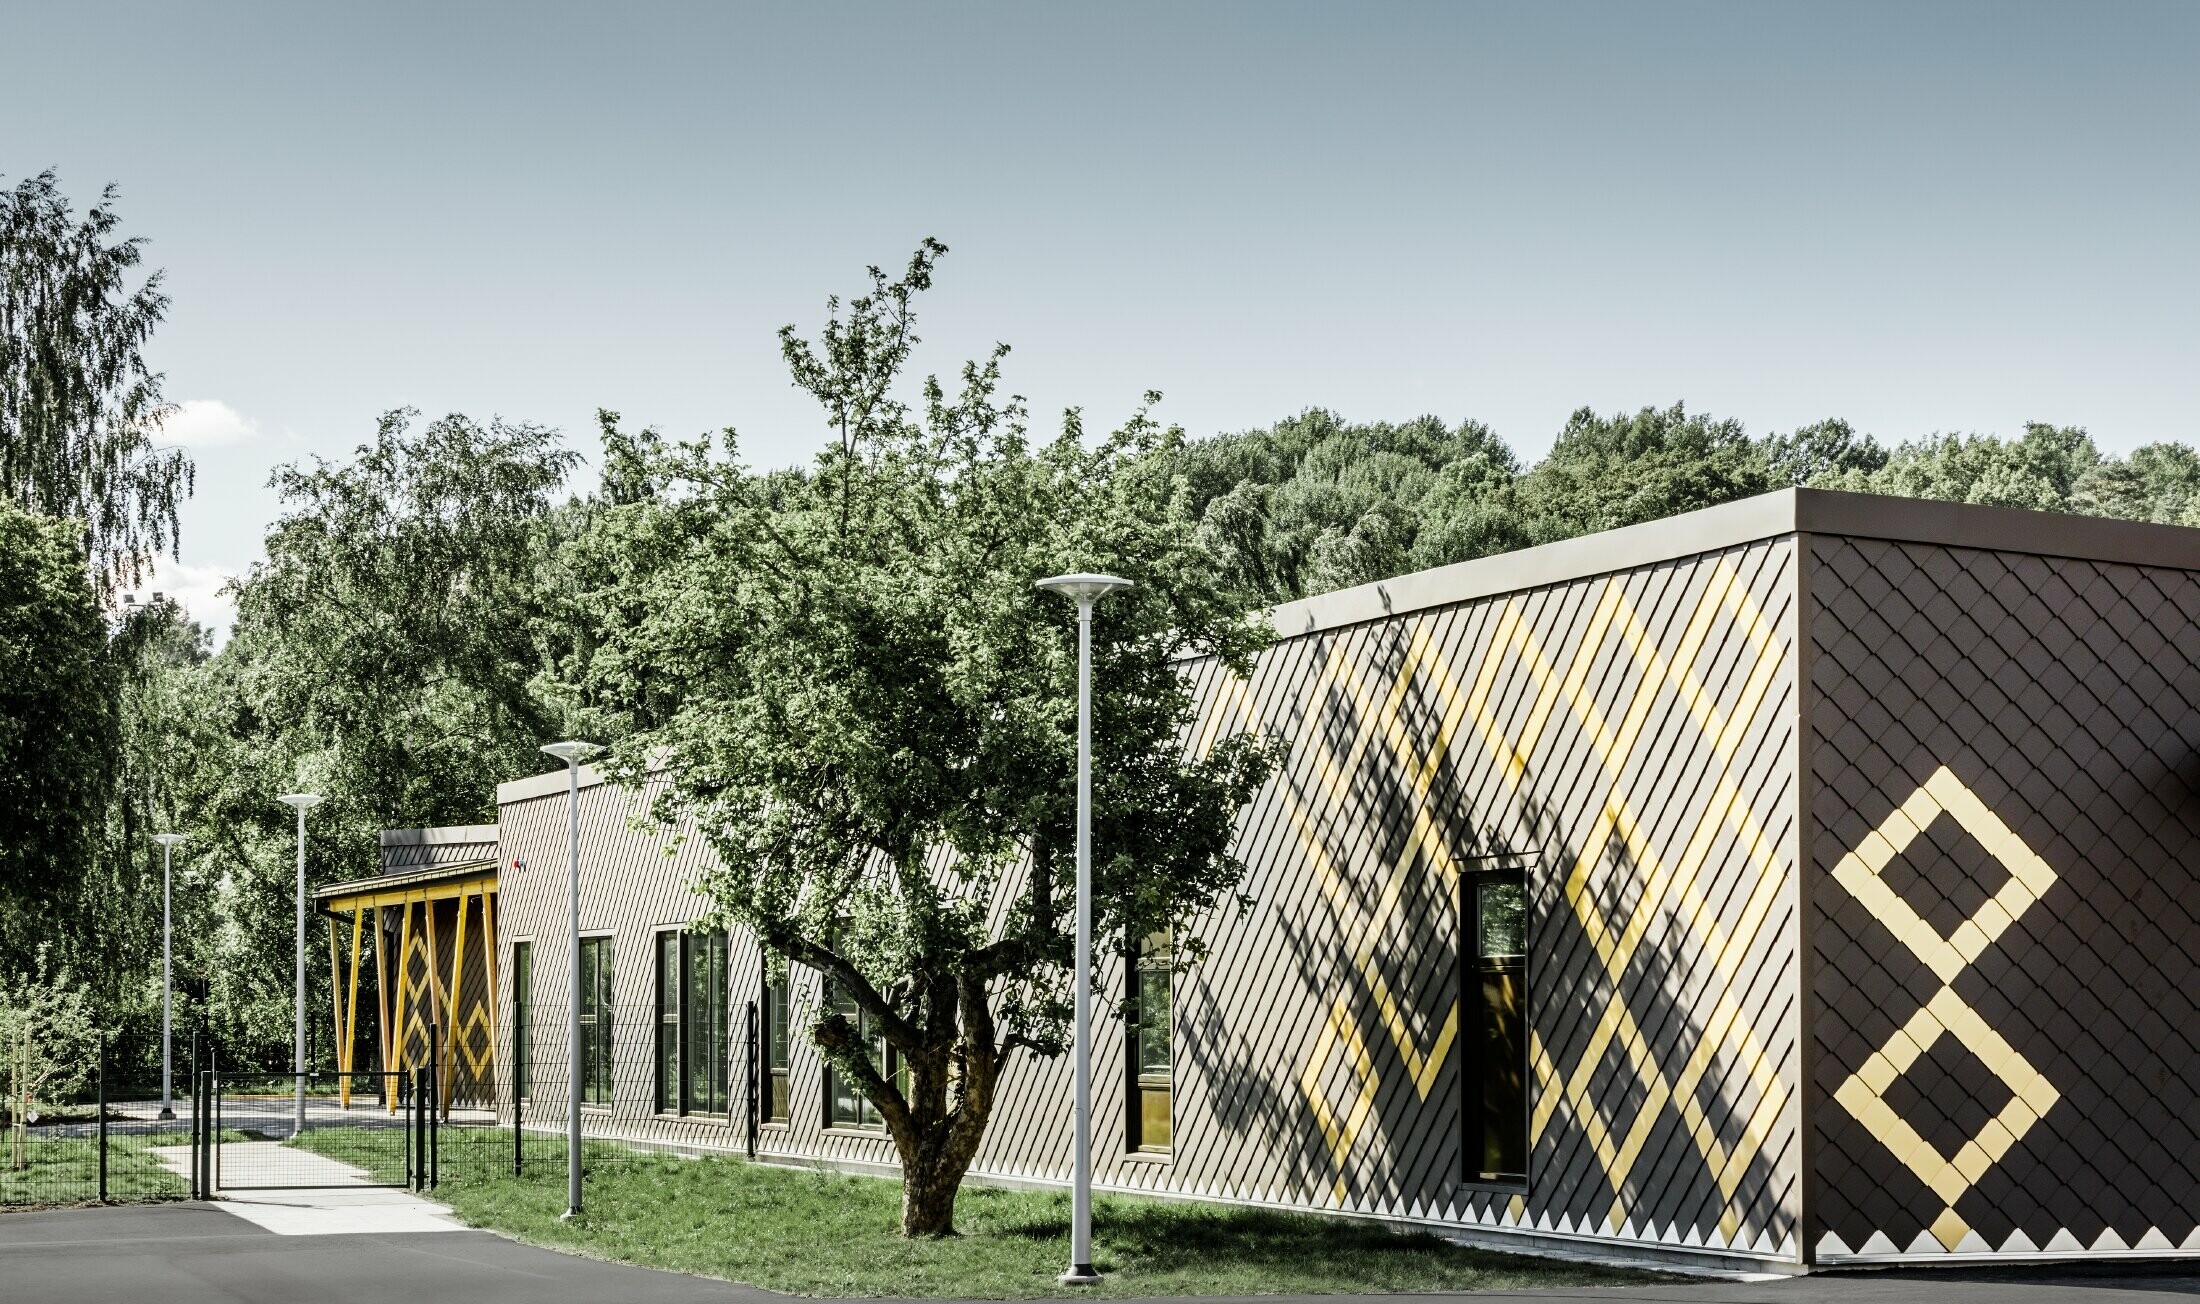 La scuola materna di Stoccolma è stata rivestita con la resistente facciata in alluminio di PREFA. Le losanghe in marrone e mayagold creano un interessante motivo.